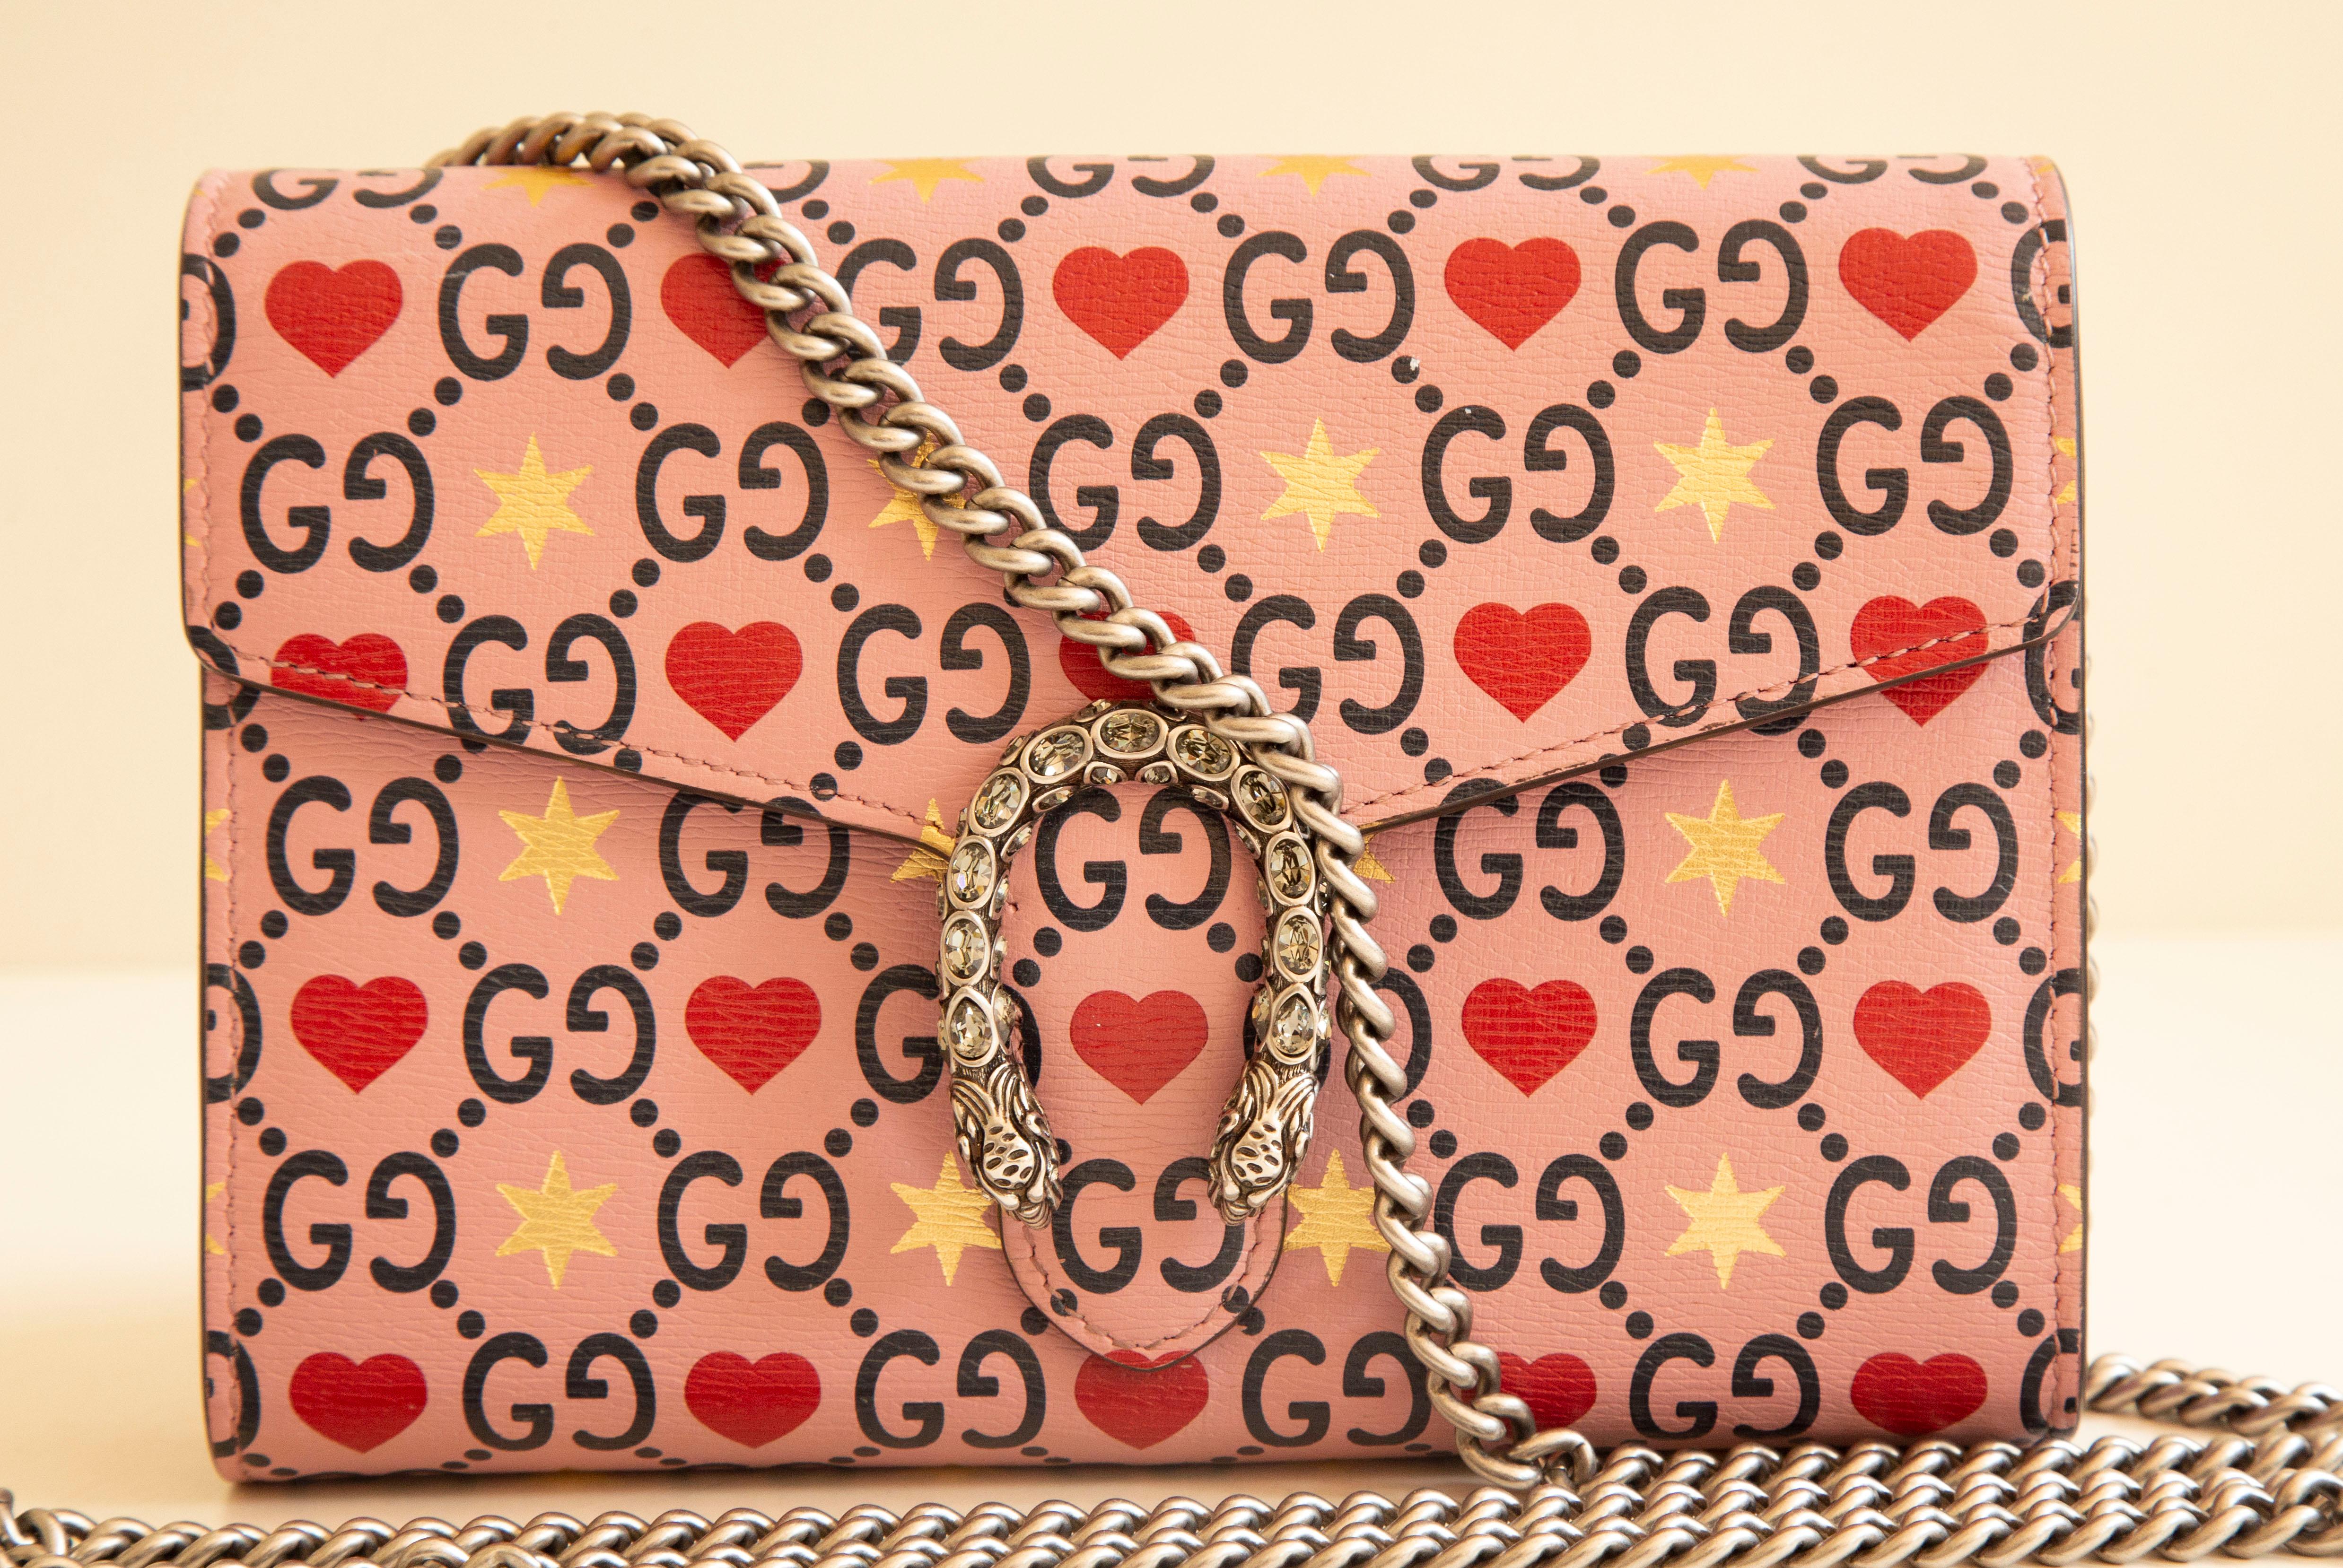 Gucci Dionizus Portemonnaie an Kette/Cross Body Bag/Umhängetasche in limitierter Auflage zum Valentinstag. Die Tasche ist aus geprägtem Kalbsleder mit dem GG-Web auf rosafarbenem Hintergrund mit Herz- und Sterndekoration gefertigt. Die Tasche hat